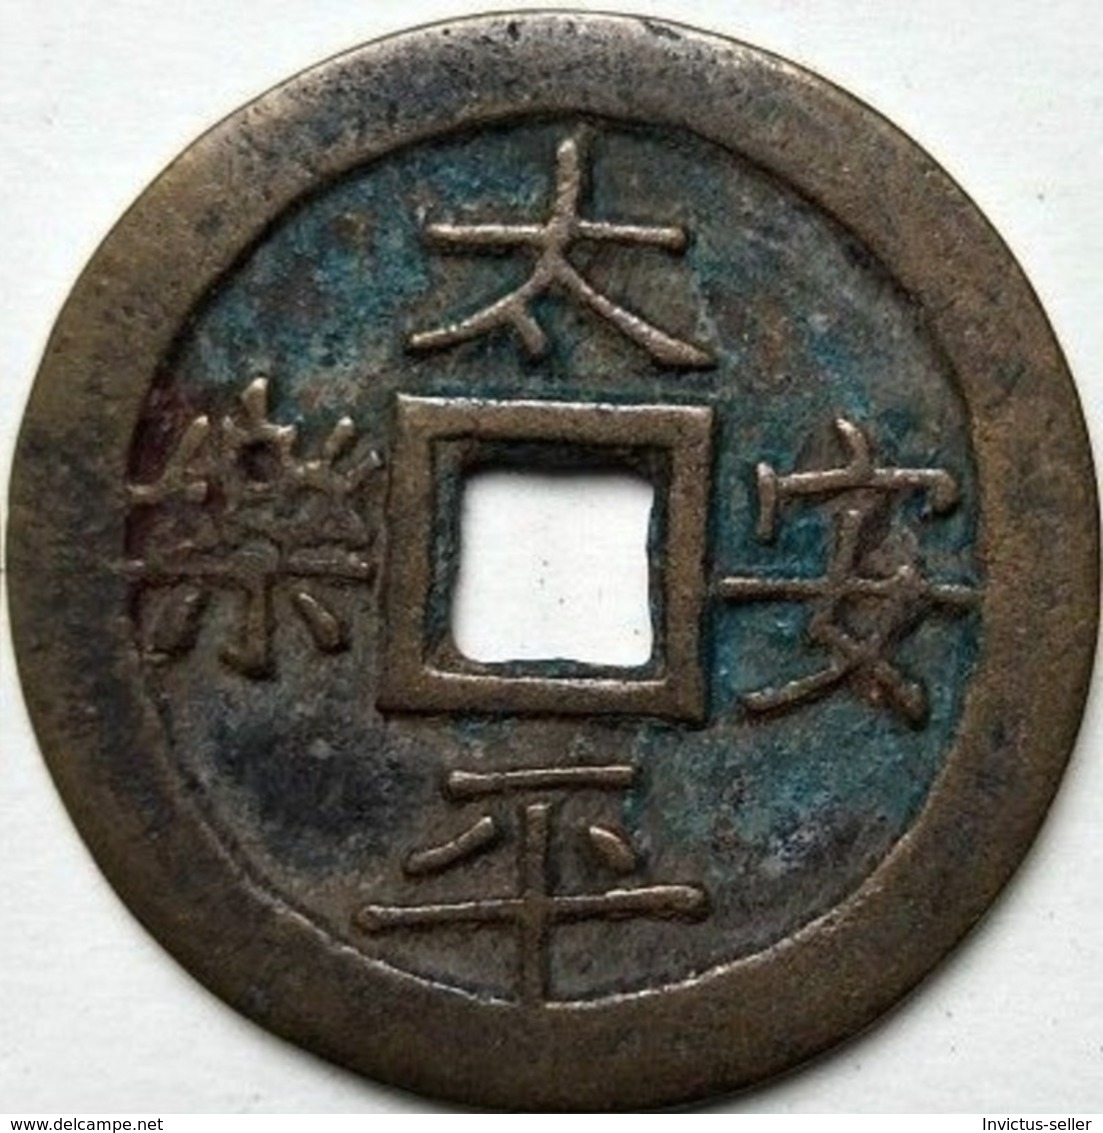 KOREA ANTICA MONETA COREANA PERIODO IMPERIALE IMPERIALE COREANE COINS  PIECES MONET COREA IMPERIAL COD #307 - Korea (Nord-)